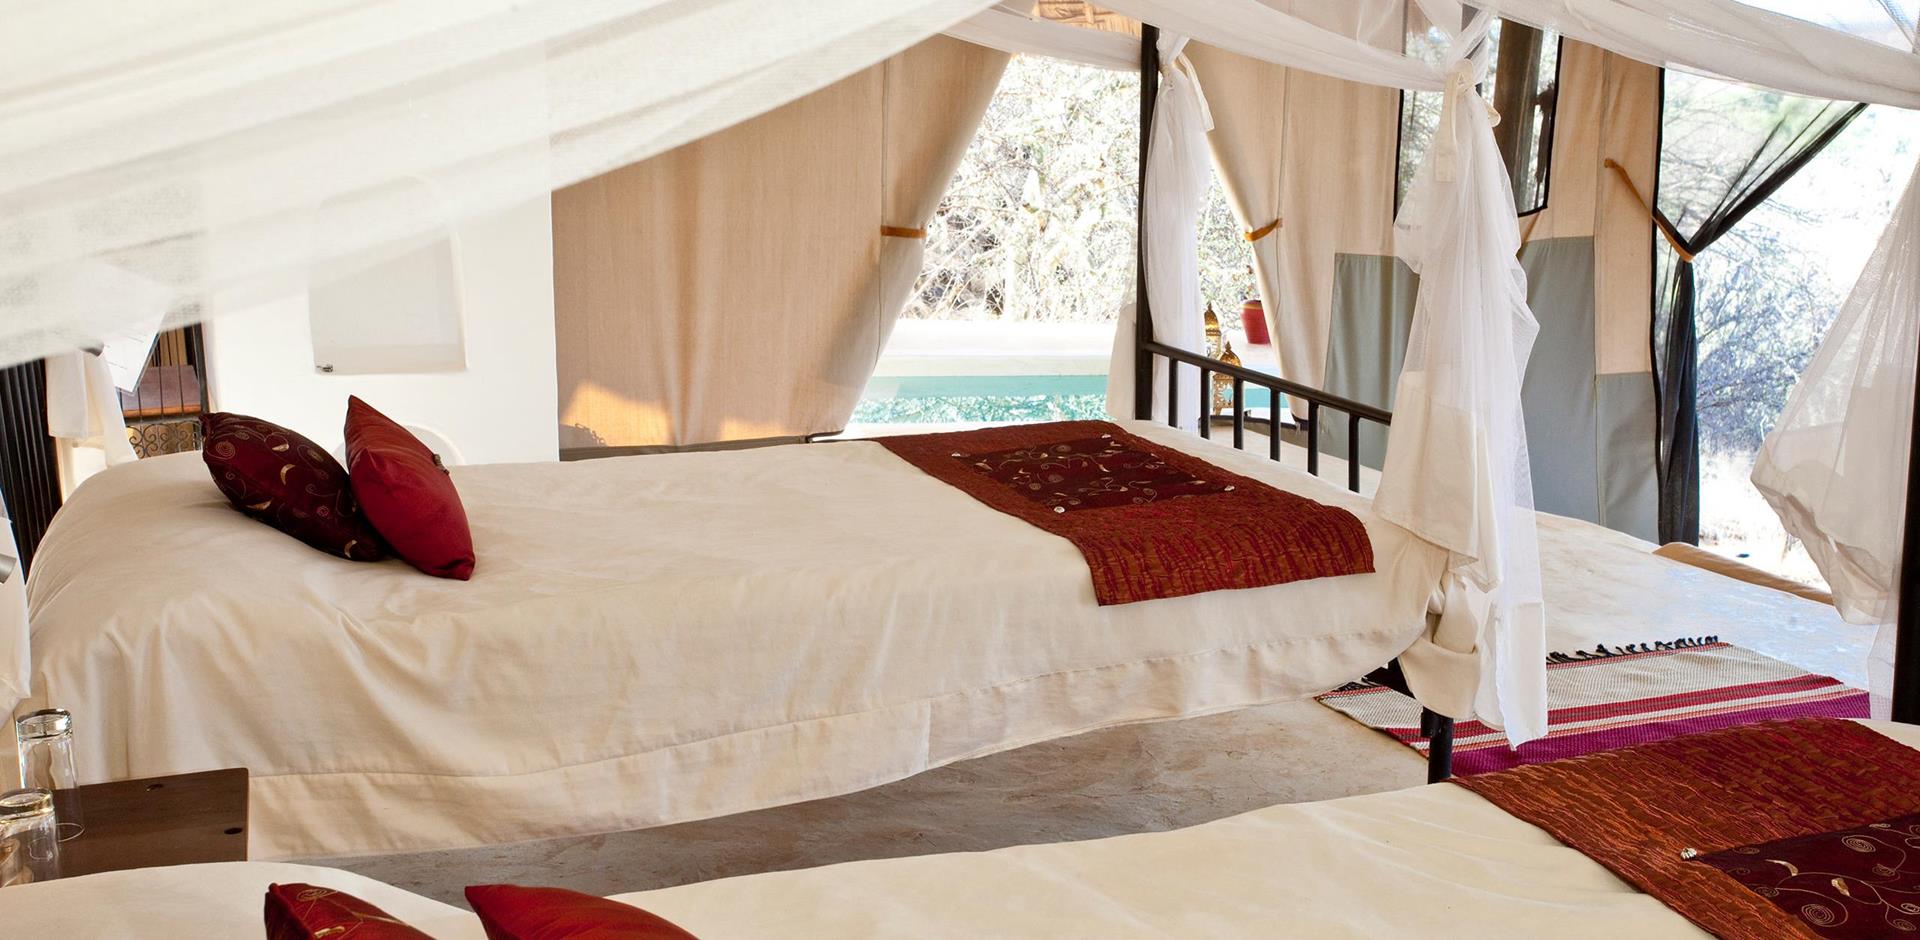 Bedroom, Sasaab, Kenya, A&K